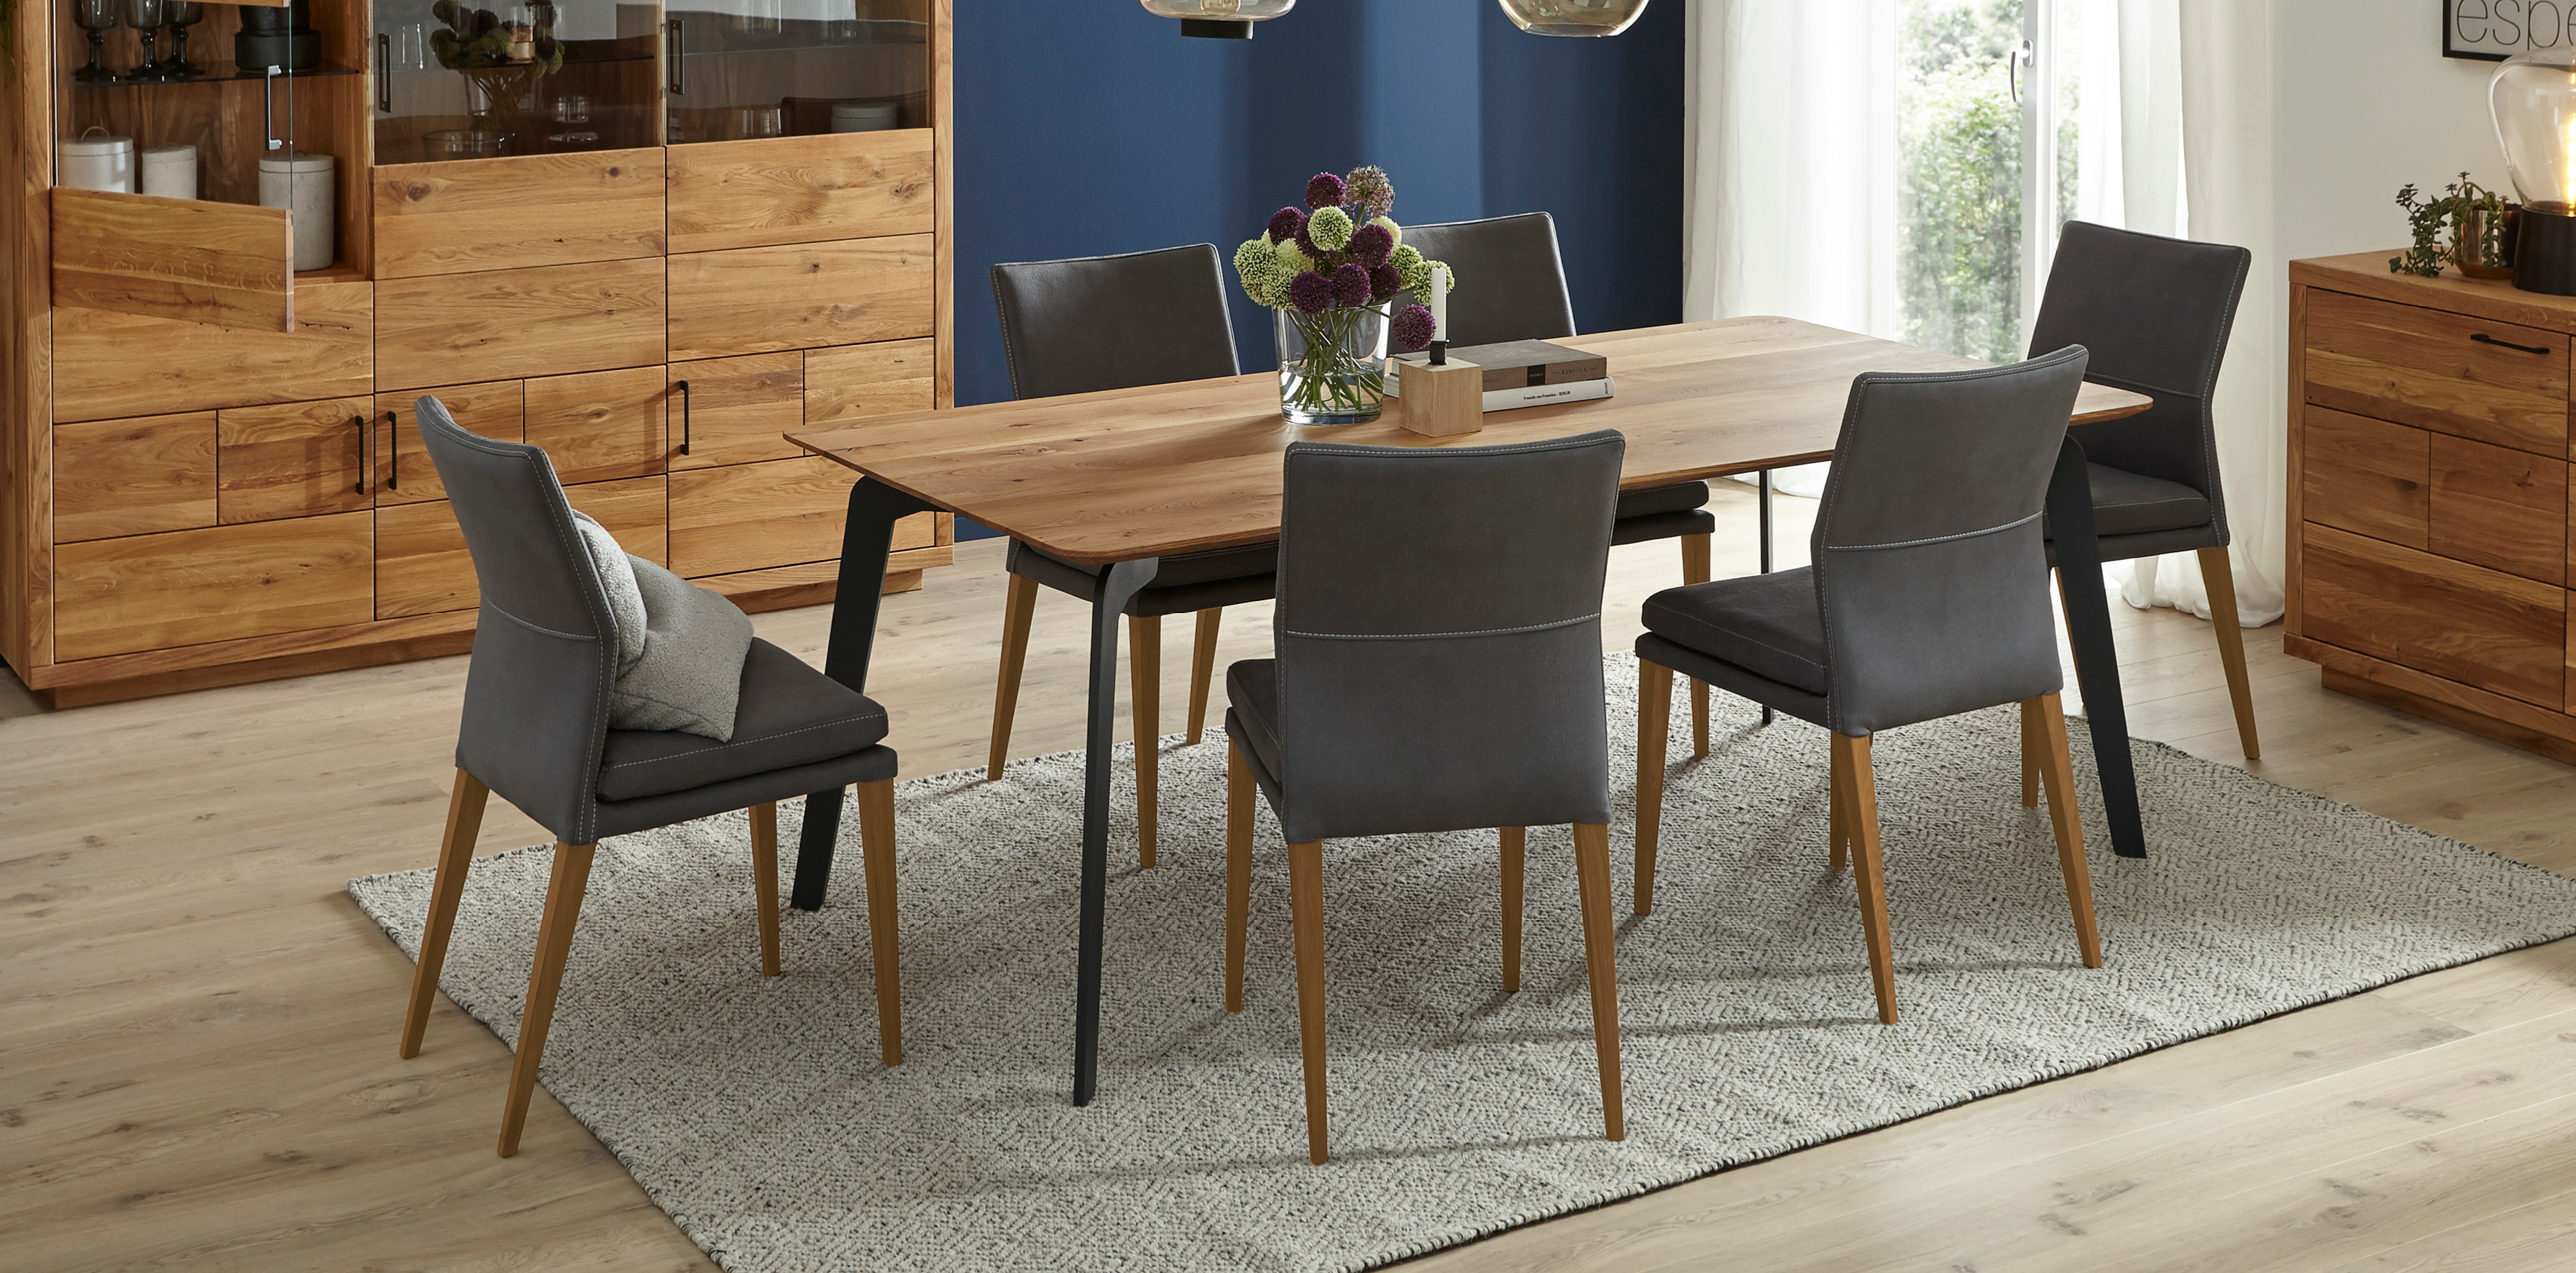 Holztisch mit grauen Stühlen